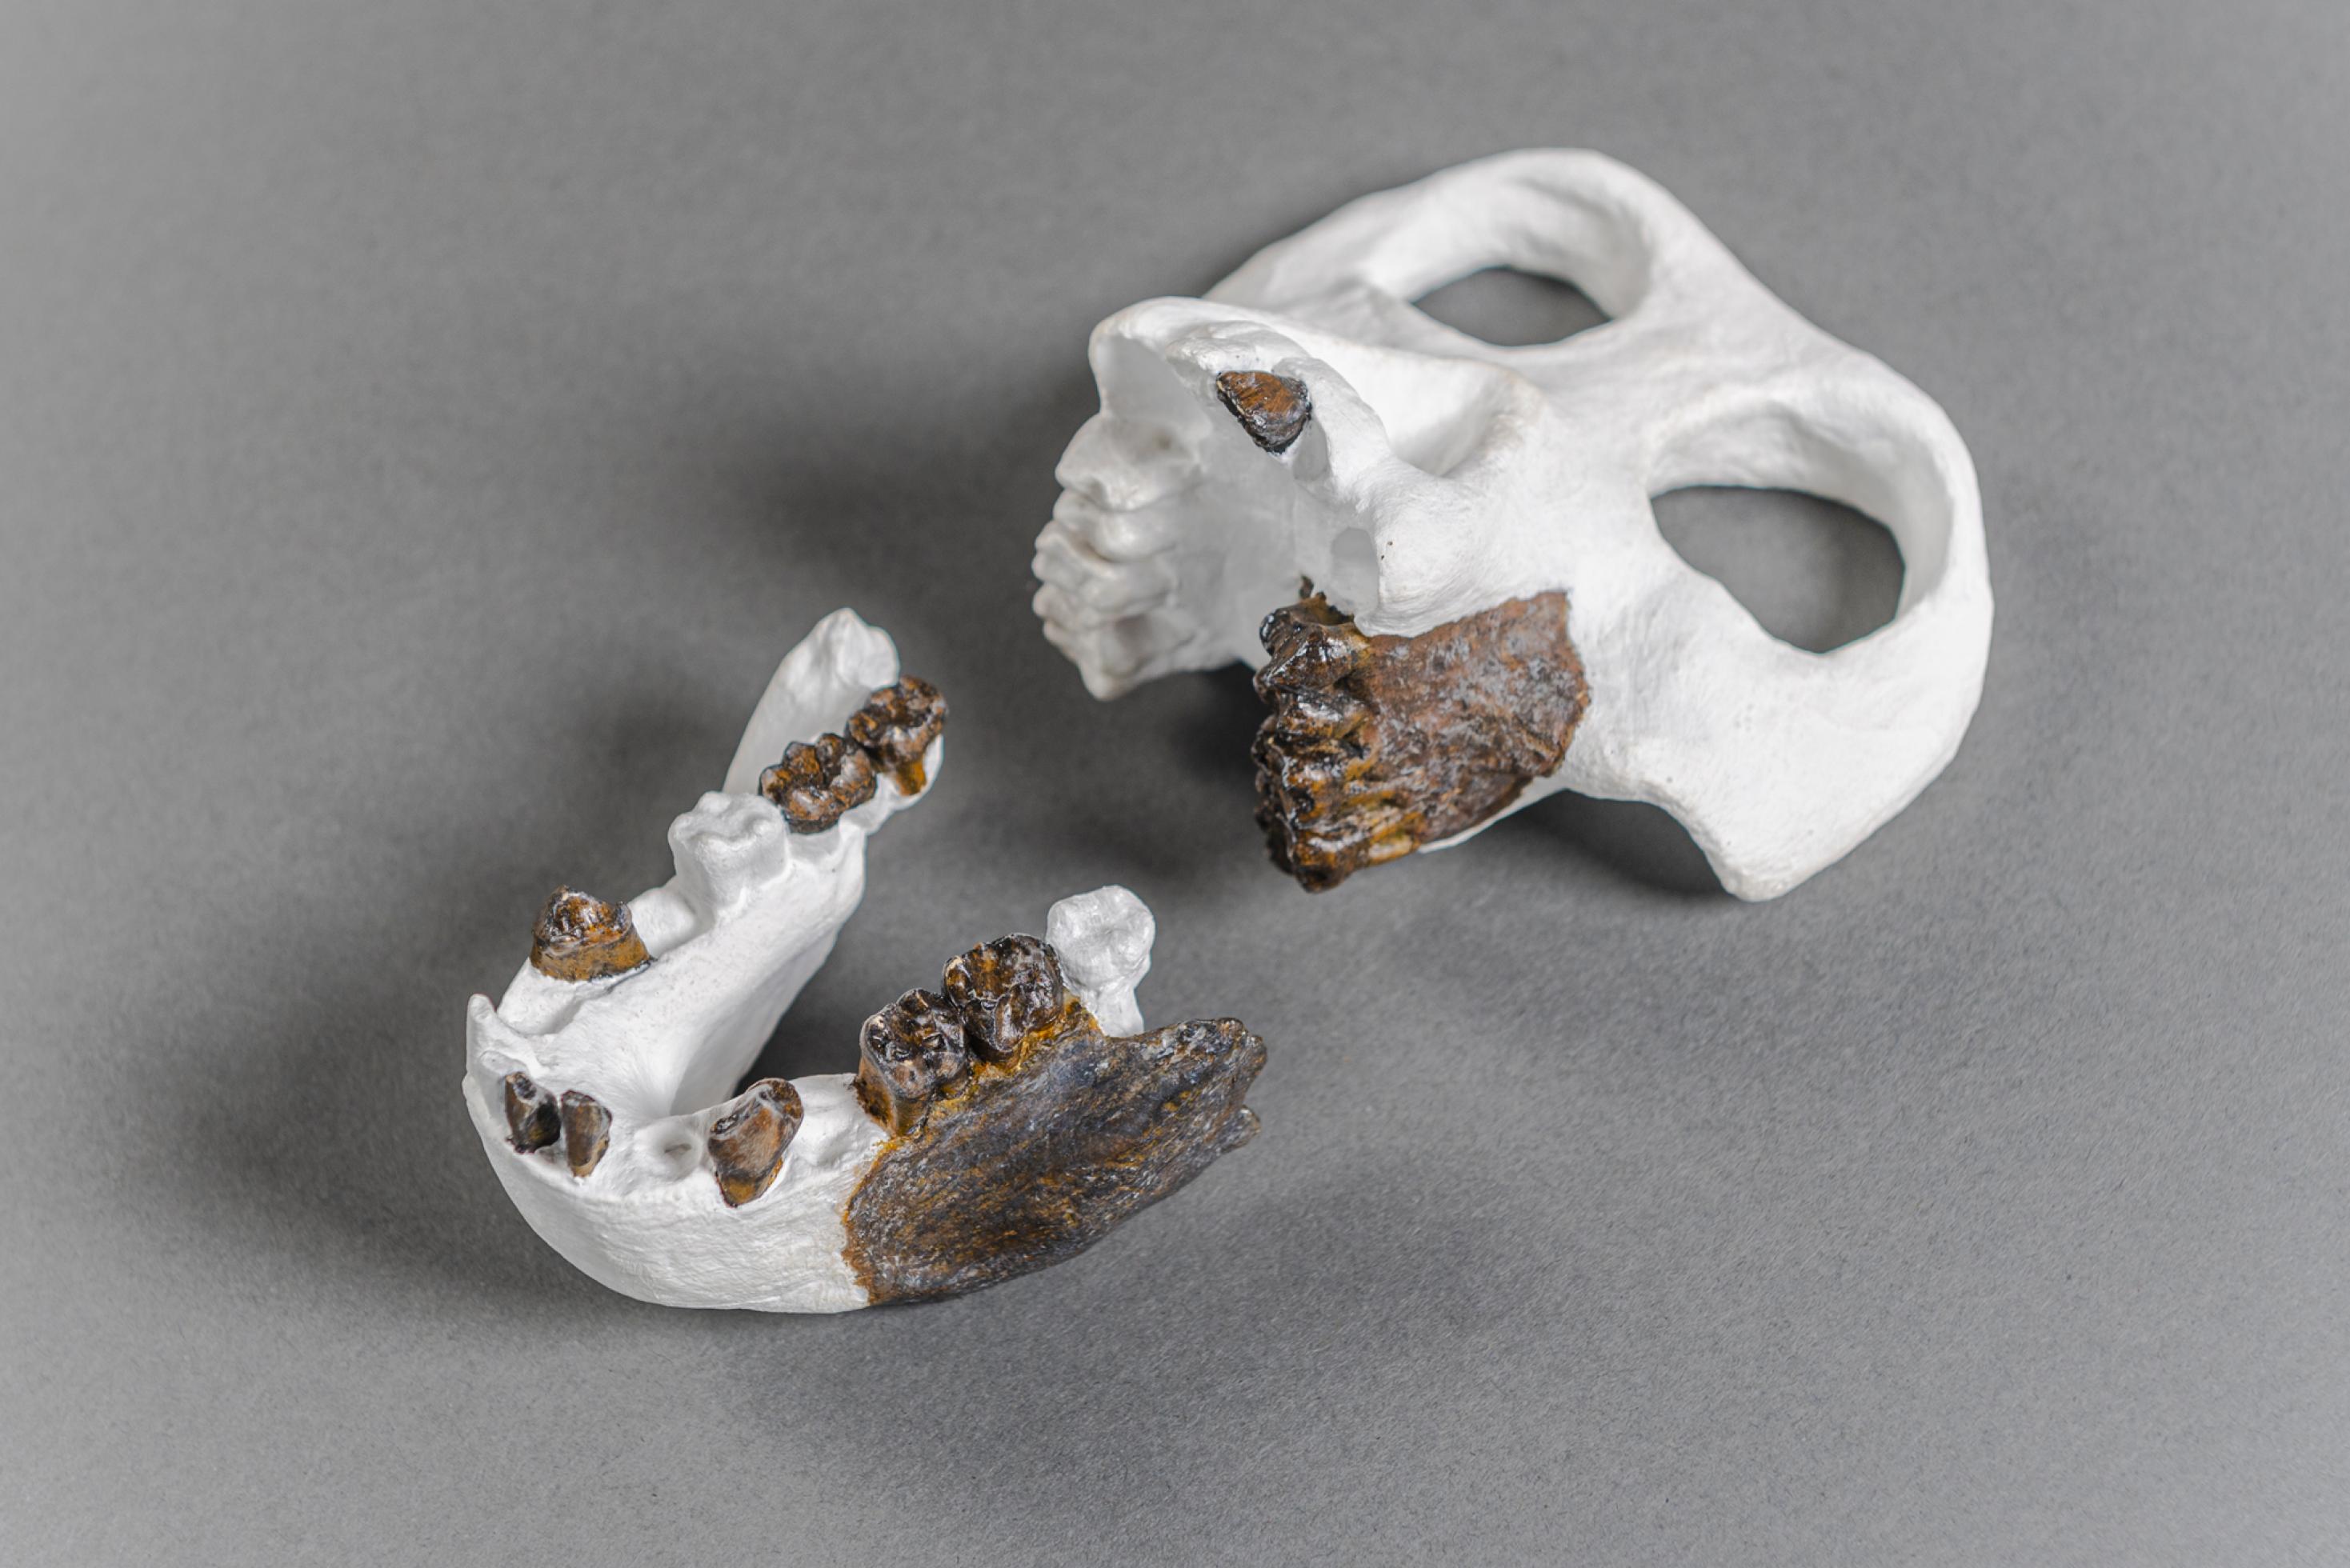 Das Foto zeigt eine Rekonstruktion des gesamten Schädels von Danuvius anhand der gefundenen fossilen Kieferbruchstücke und Zähne. Vor allem die Zähne weisen charakteristische Merkmale auf, die es den Paläoanthropologen ermöglichen, den Fund systematisch einzuordnen, als Art zu definieren und festzustellen mit wem er verwandt ist.